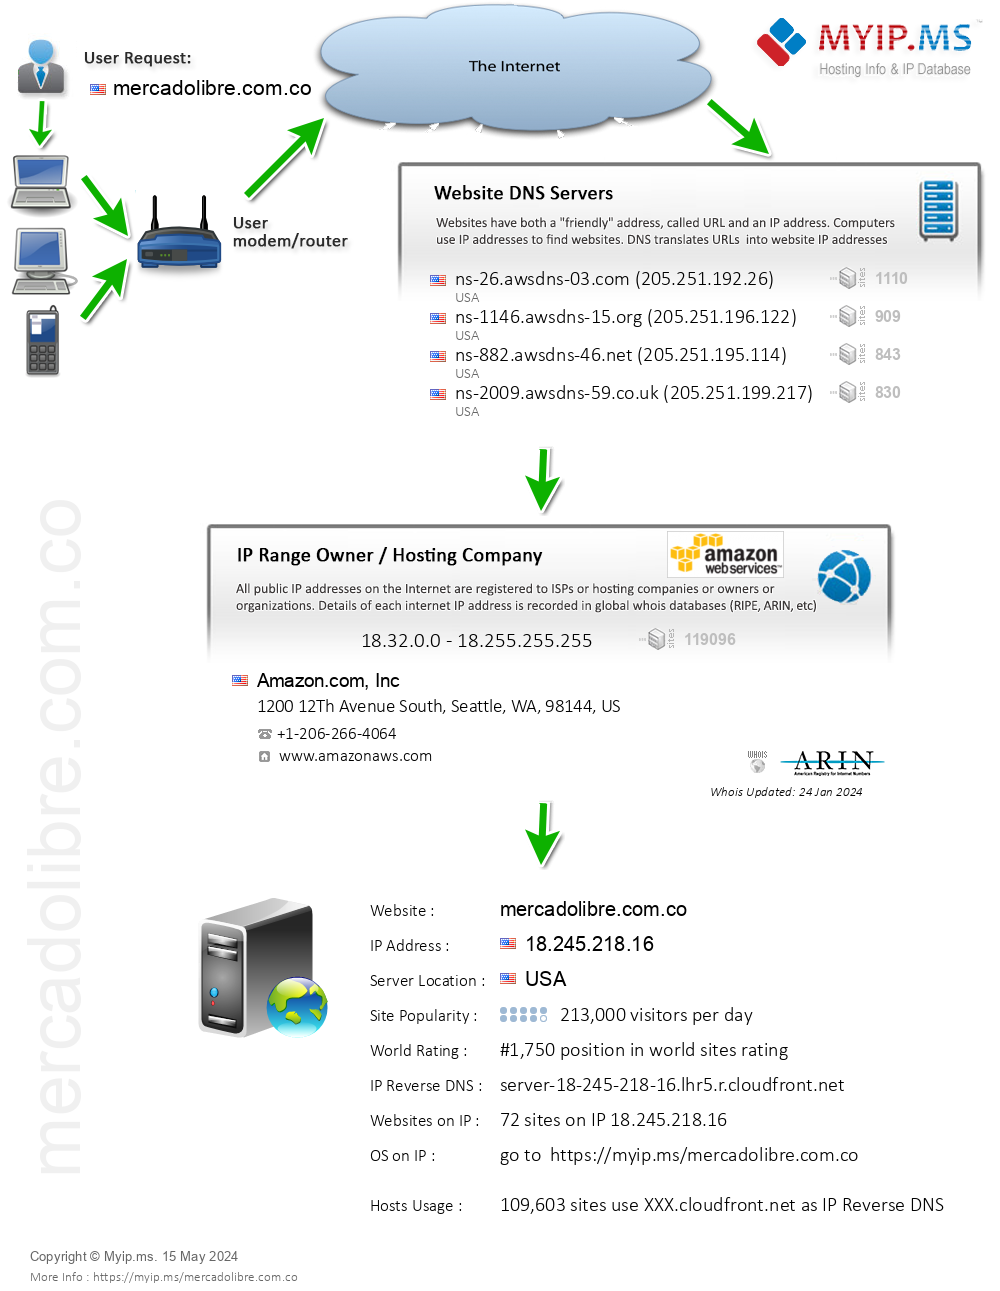 Mercadolibre.com.co - Website Hosting Visual IP Diagram